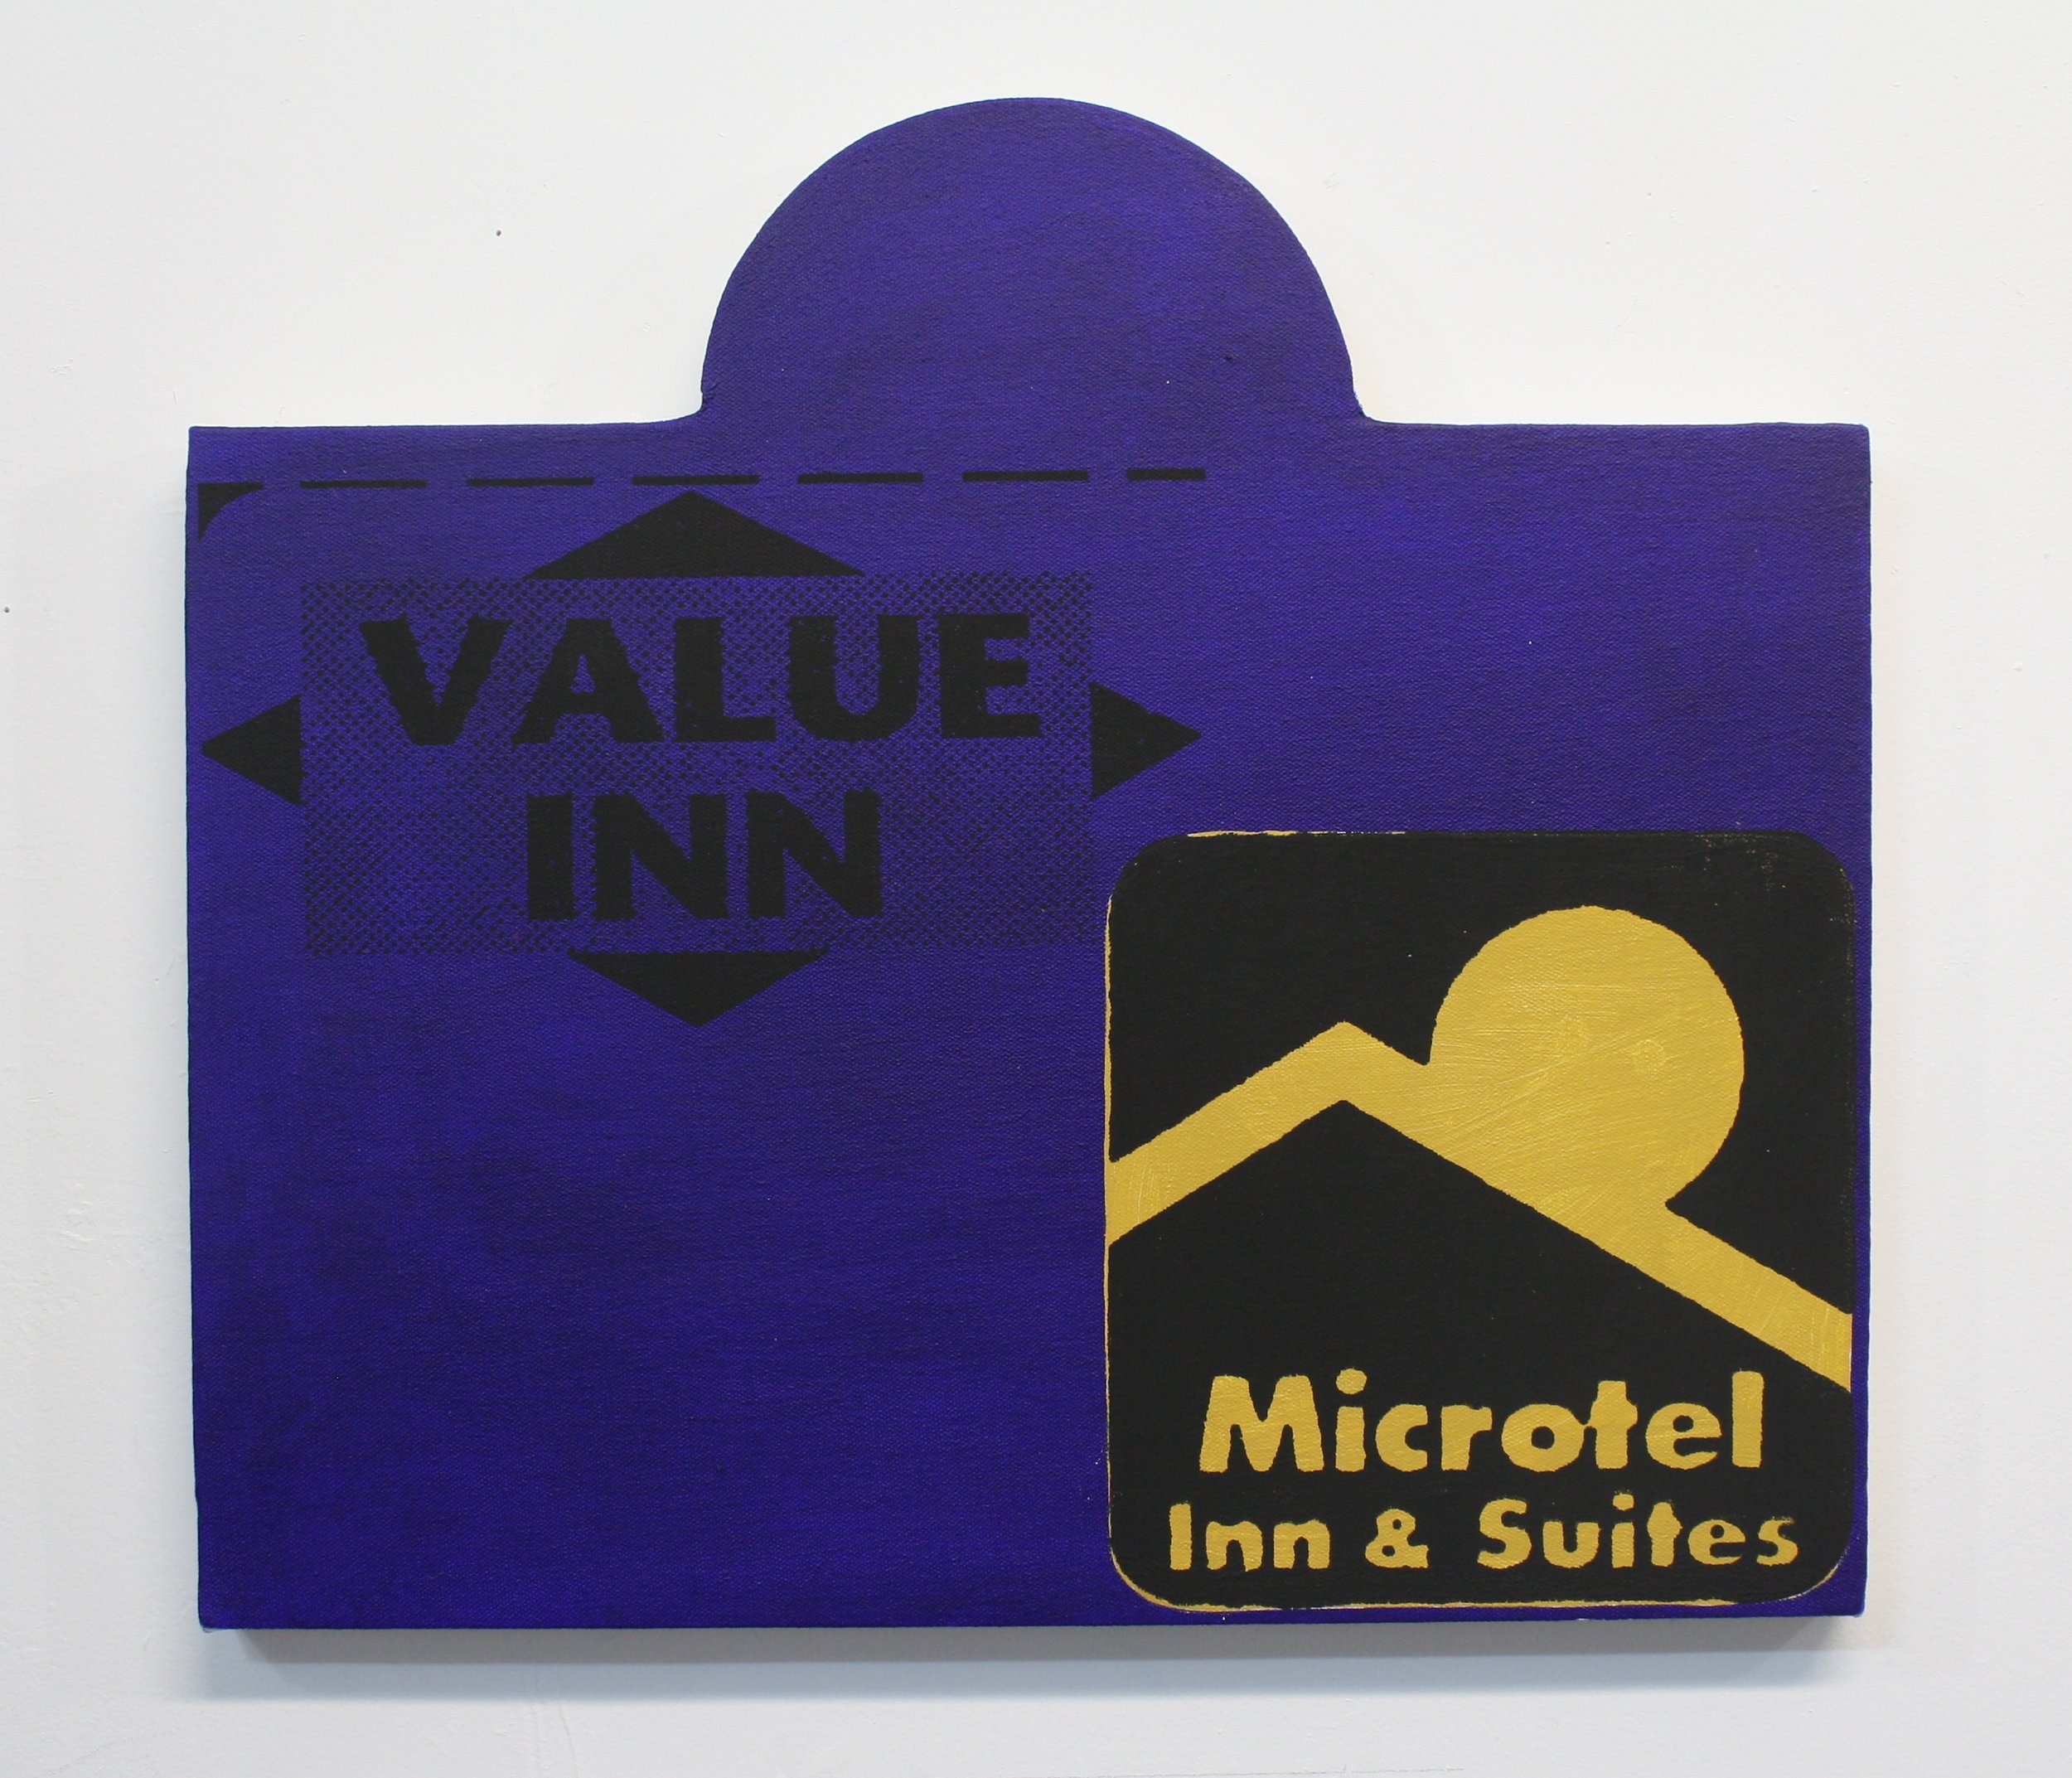 Microtel Inn & Suites.jpeg